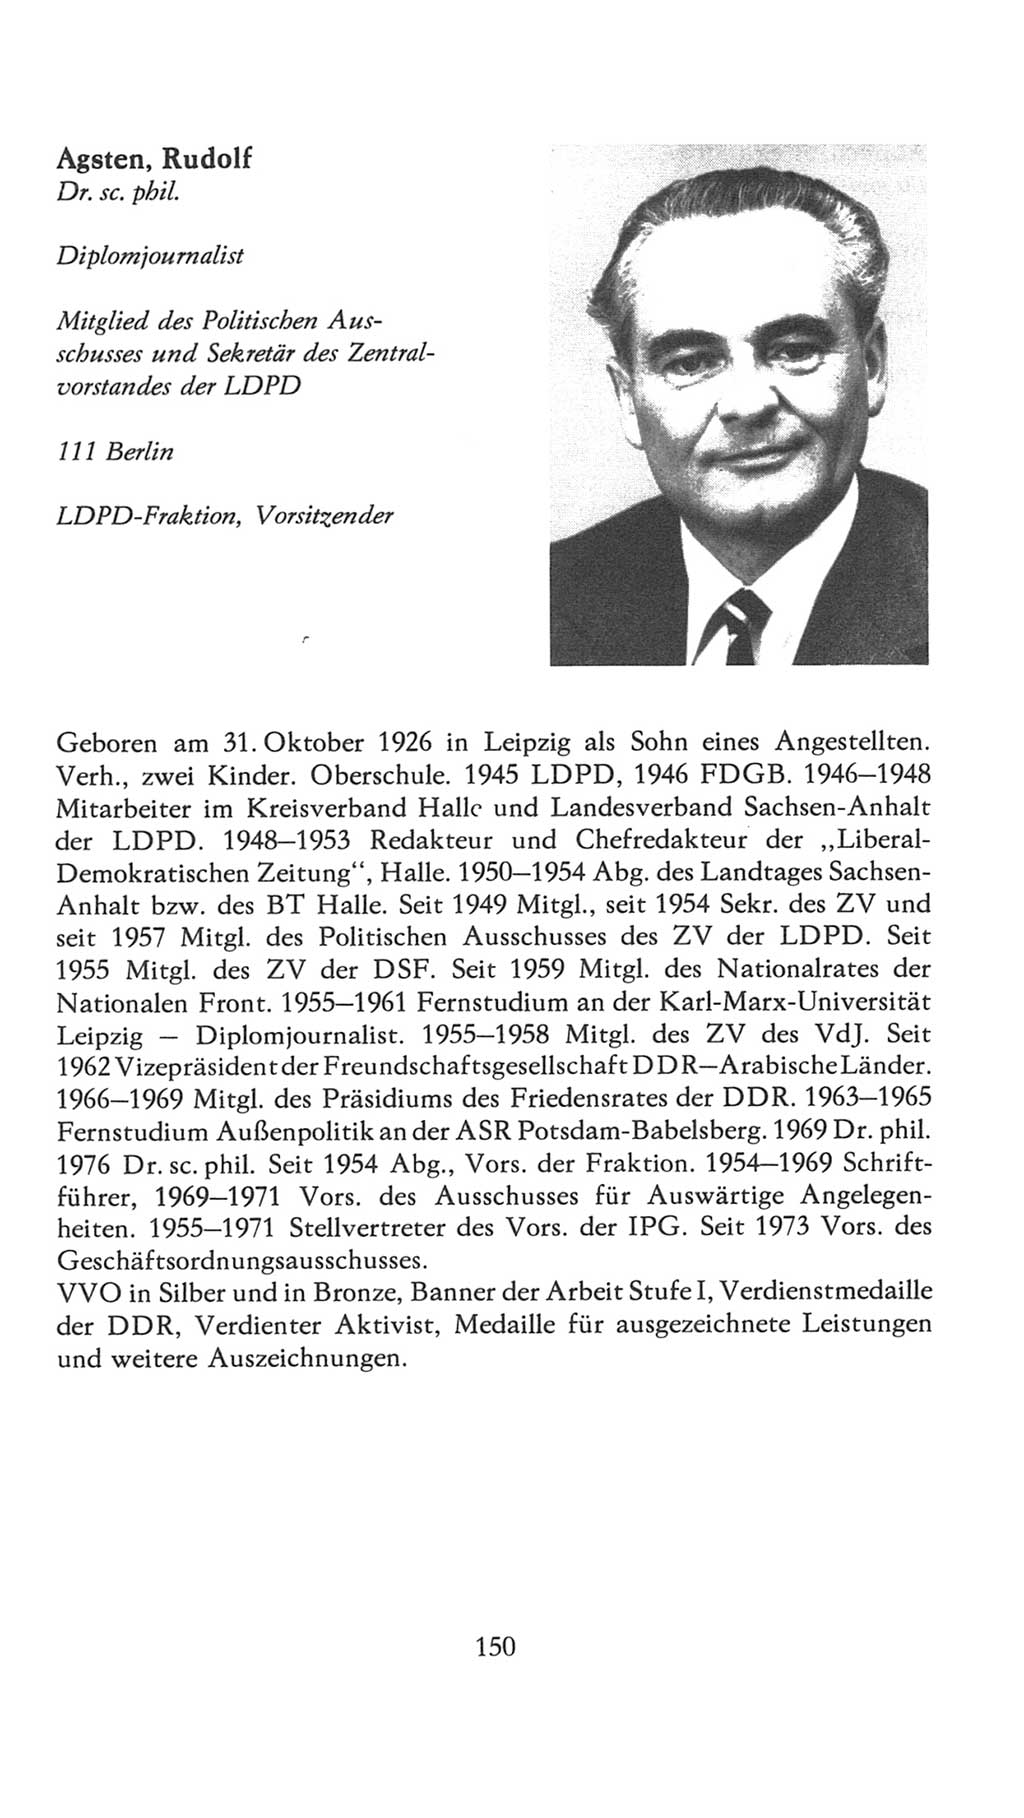 Volkskammer (VK) der Deutschen Demokratischen Republik (DDR), 7. Wahlperiode 1976-1981, Seite 150 (VK. DDR 7. WP. 1976-1981, S. 150)